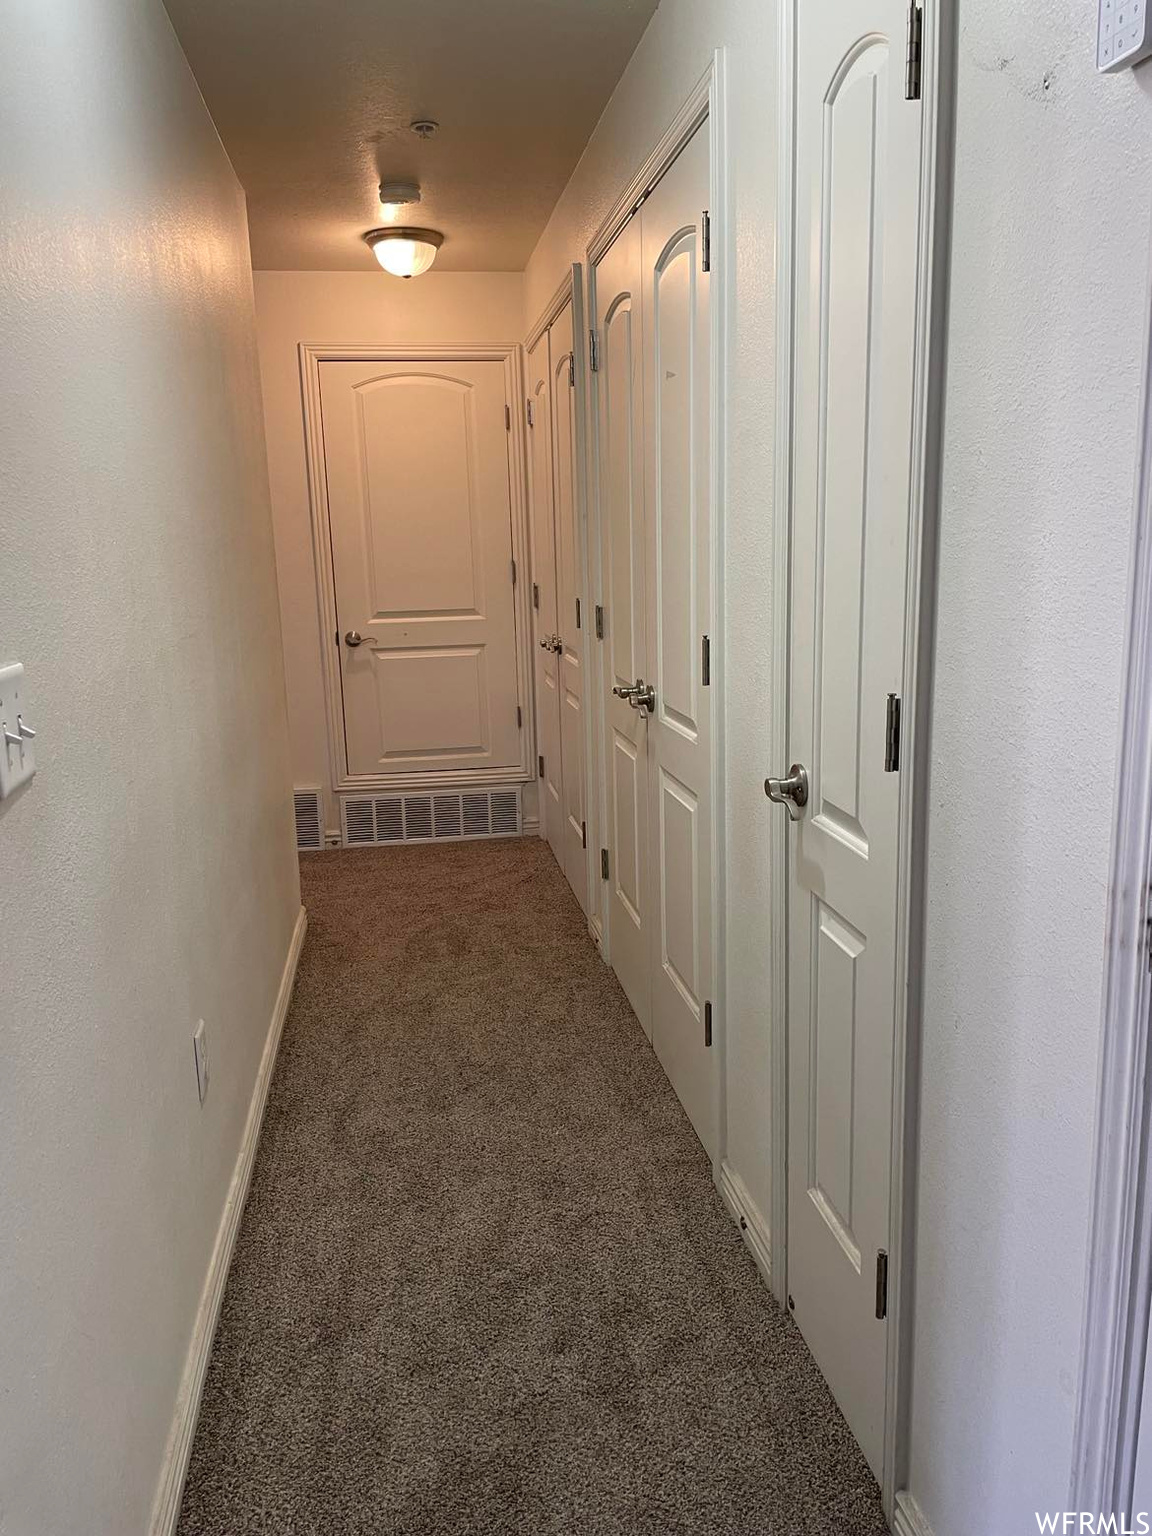 Corridor featuring carpet